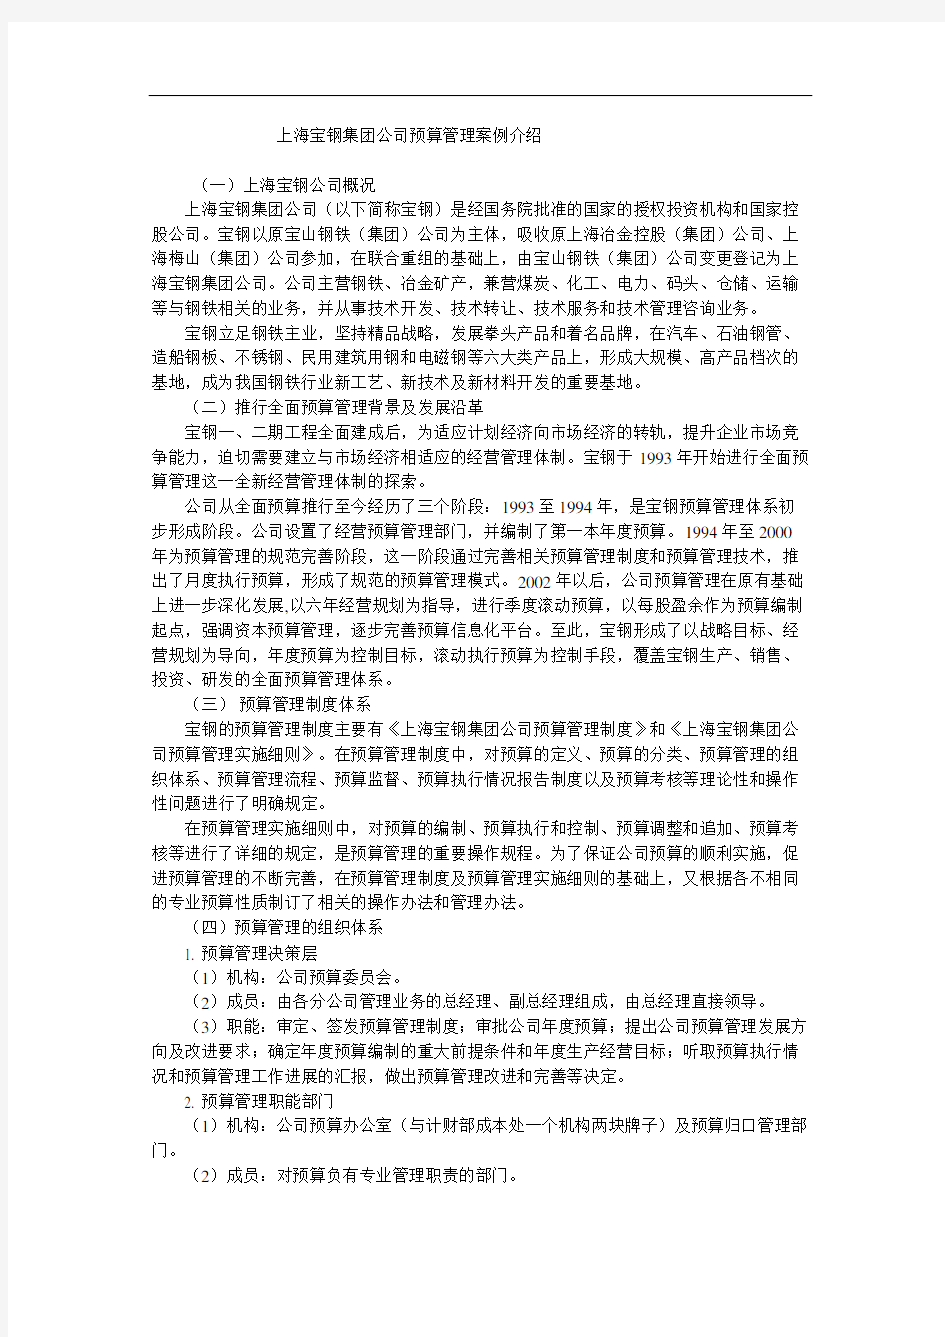 上海宝钢集团公司预算管理案例审批稿